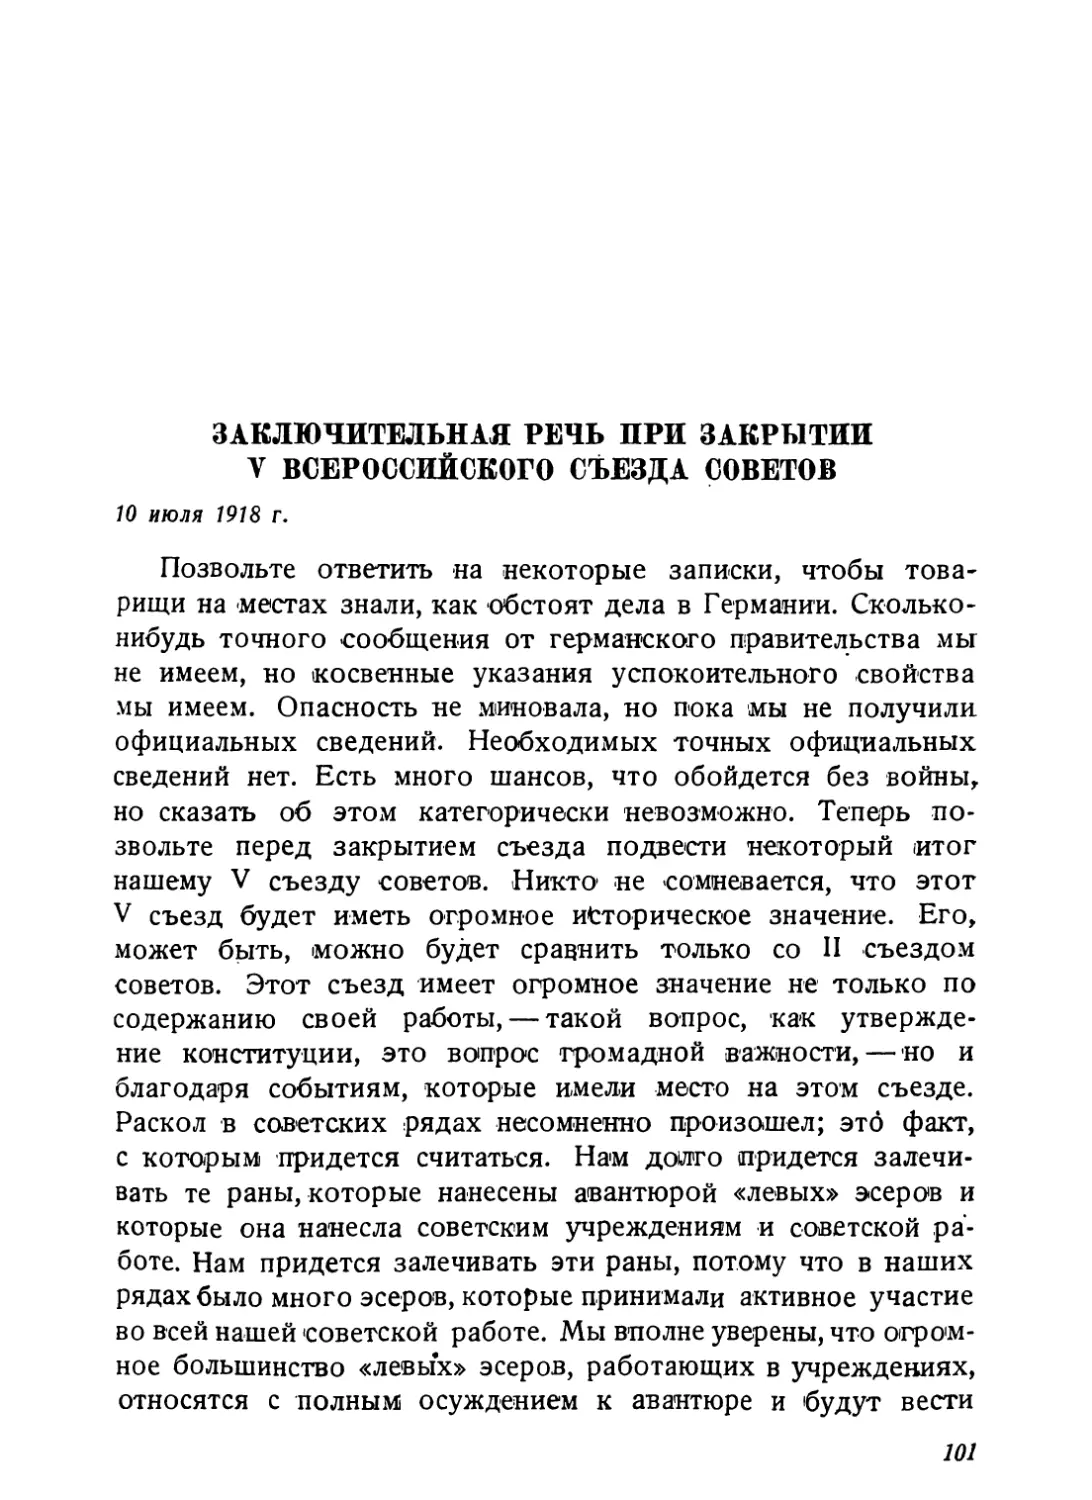 Заключительная речь при закрытии V Всероссийского съезда советов, 10 июля 1918 г